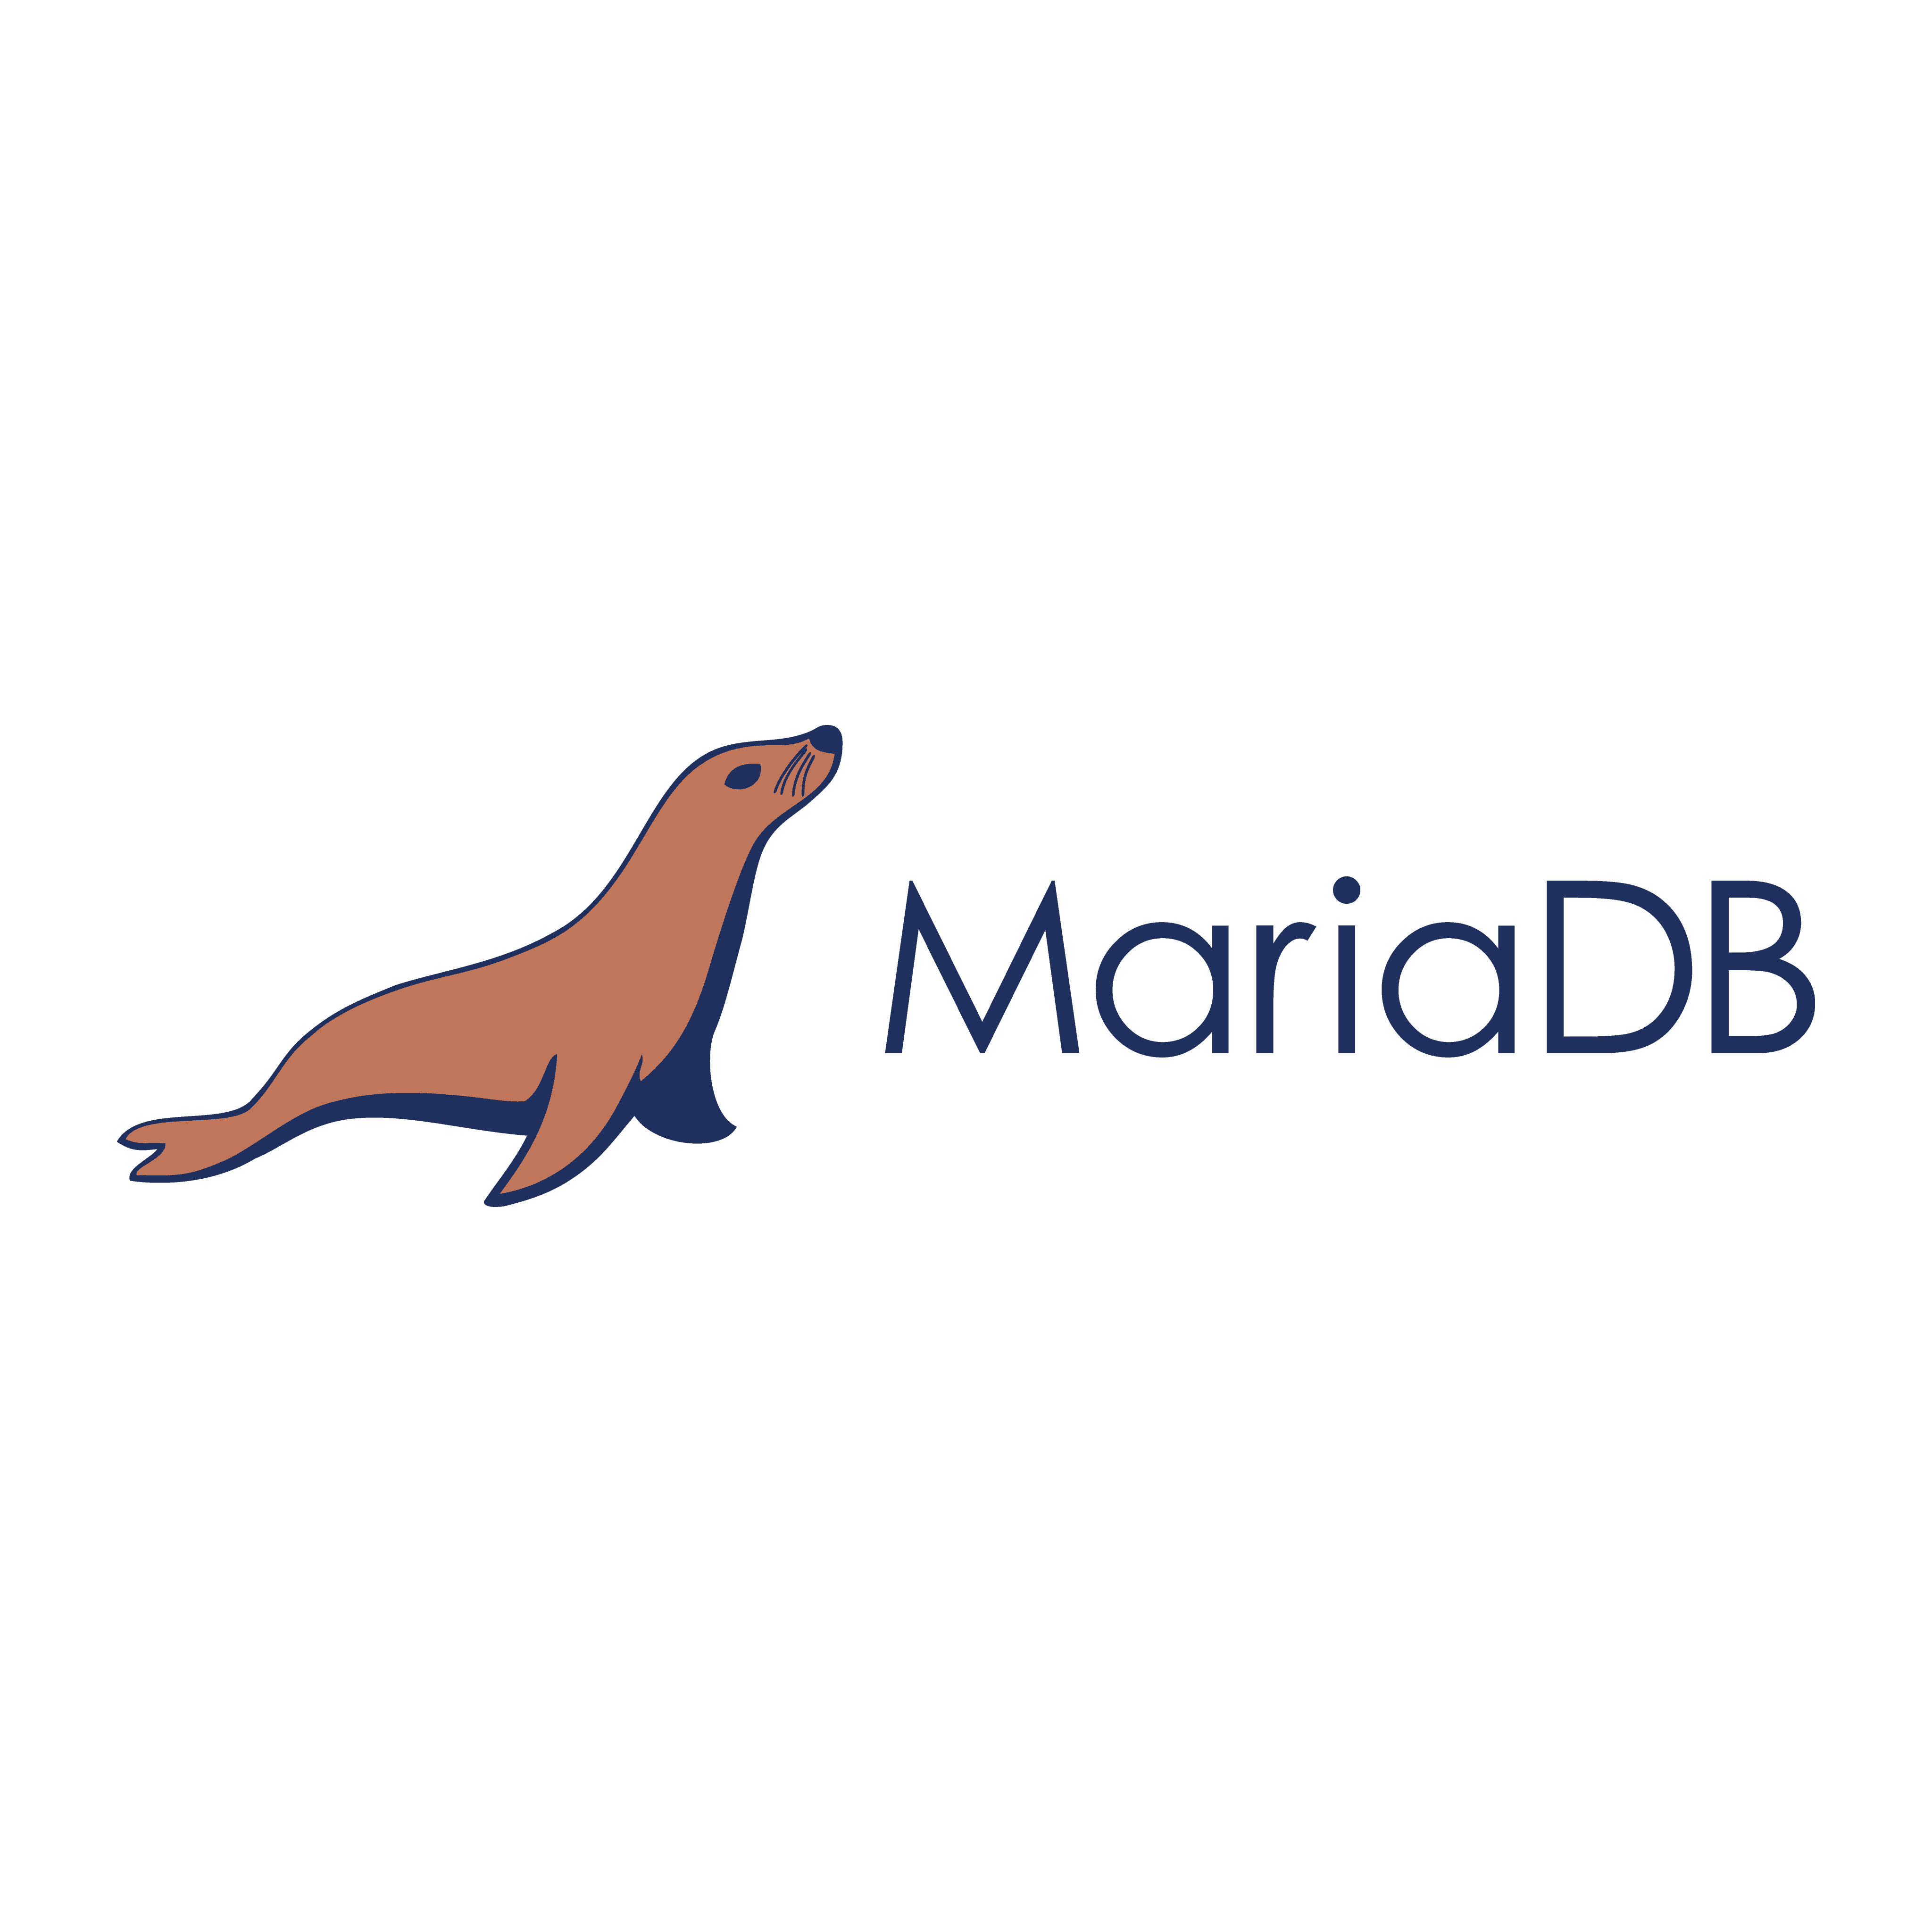 logomarca mariadb